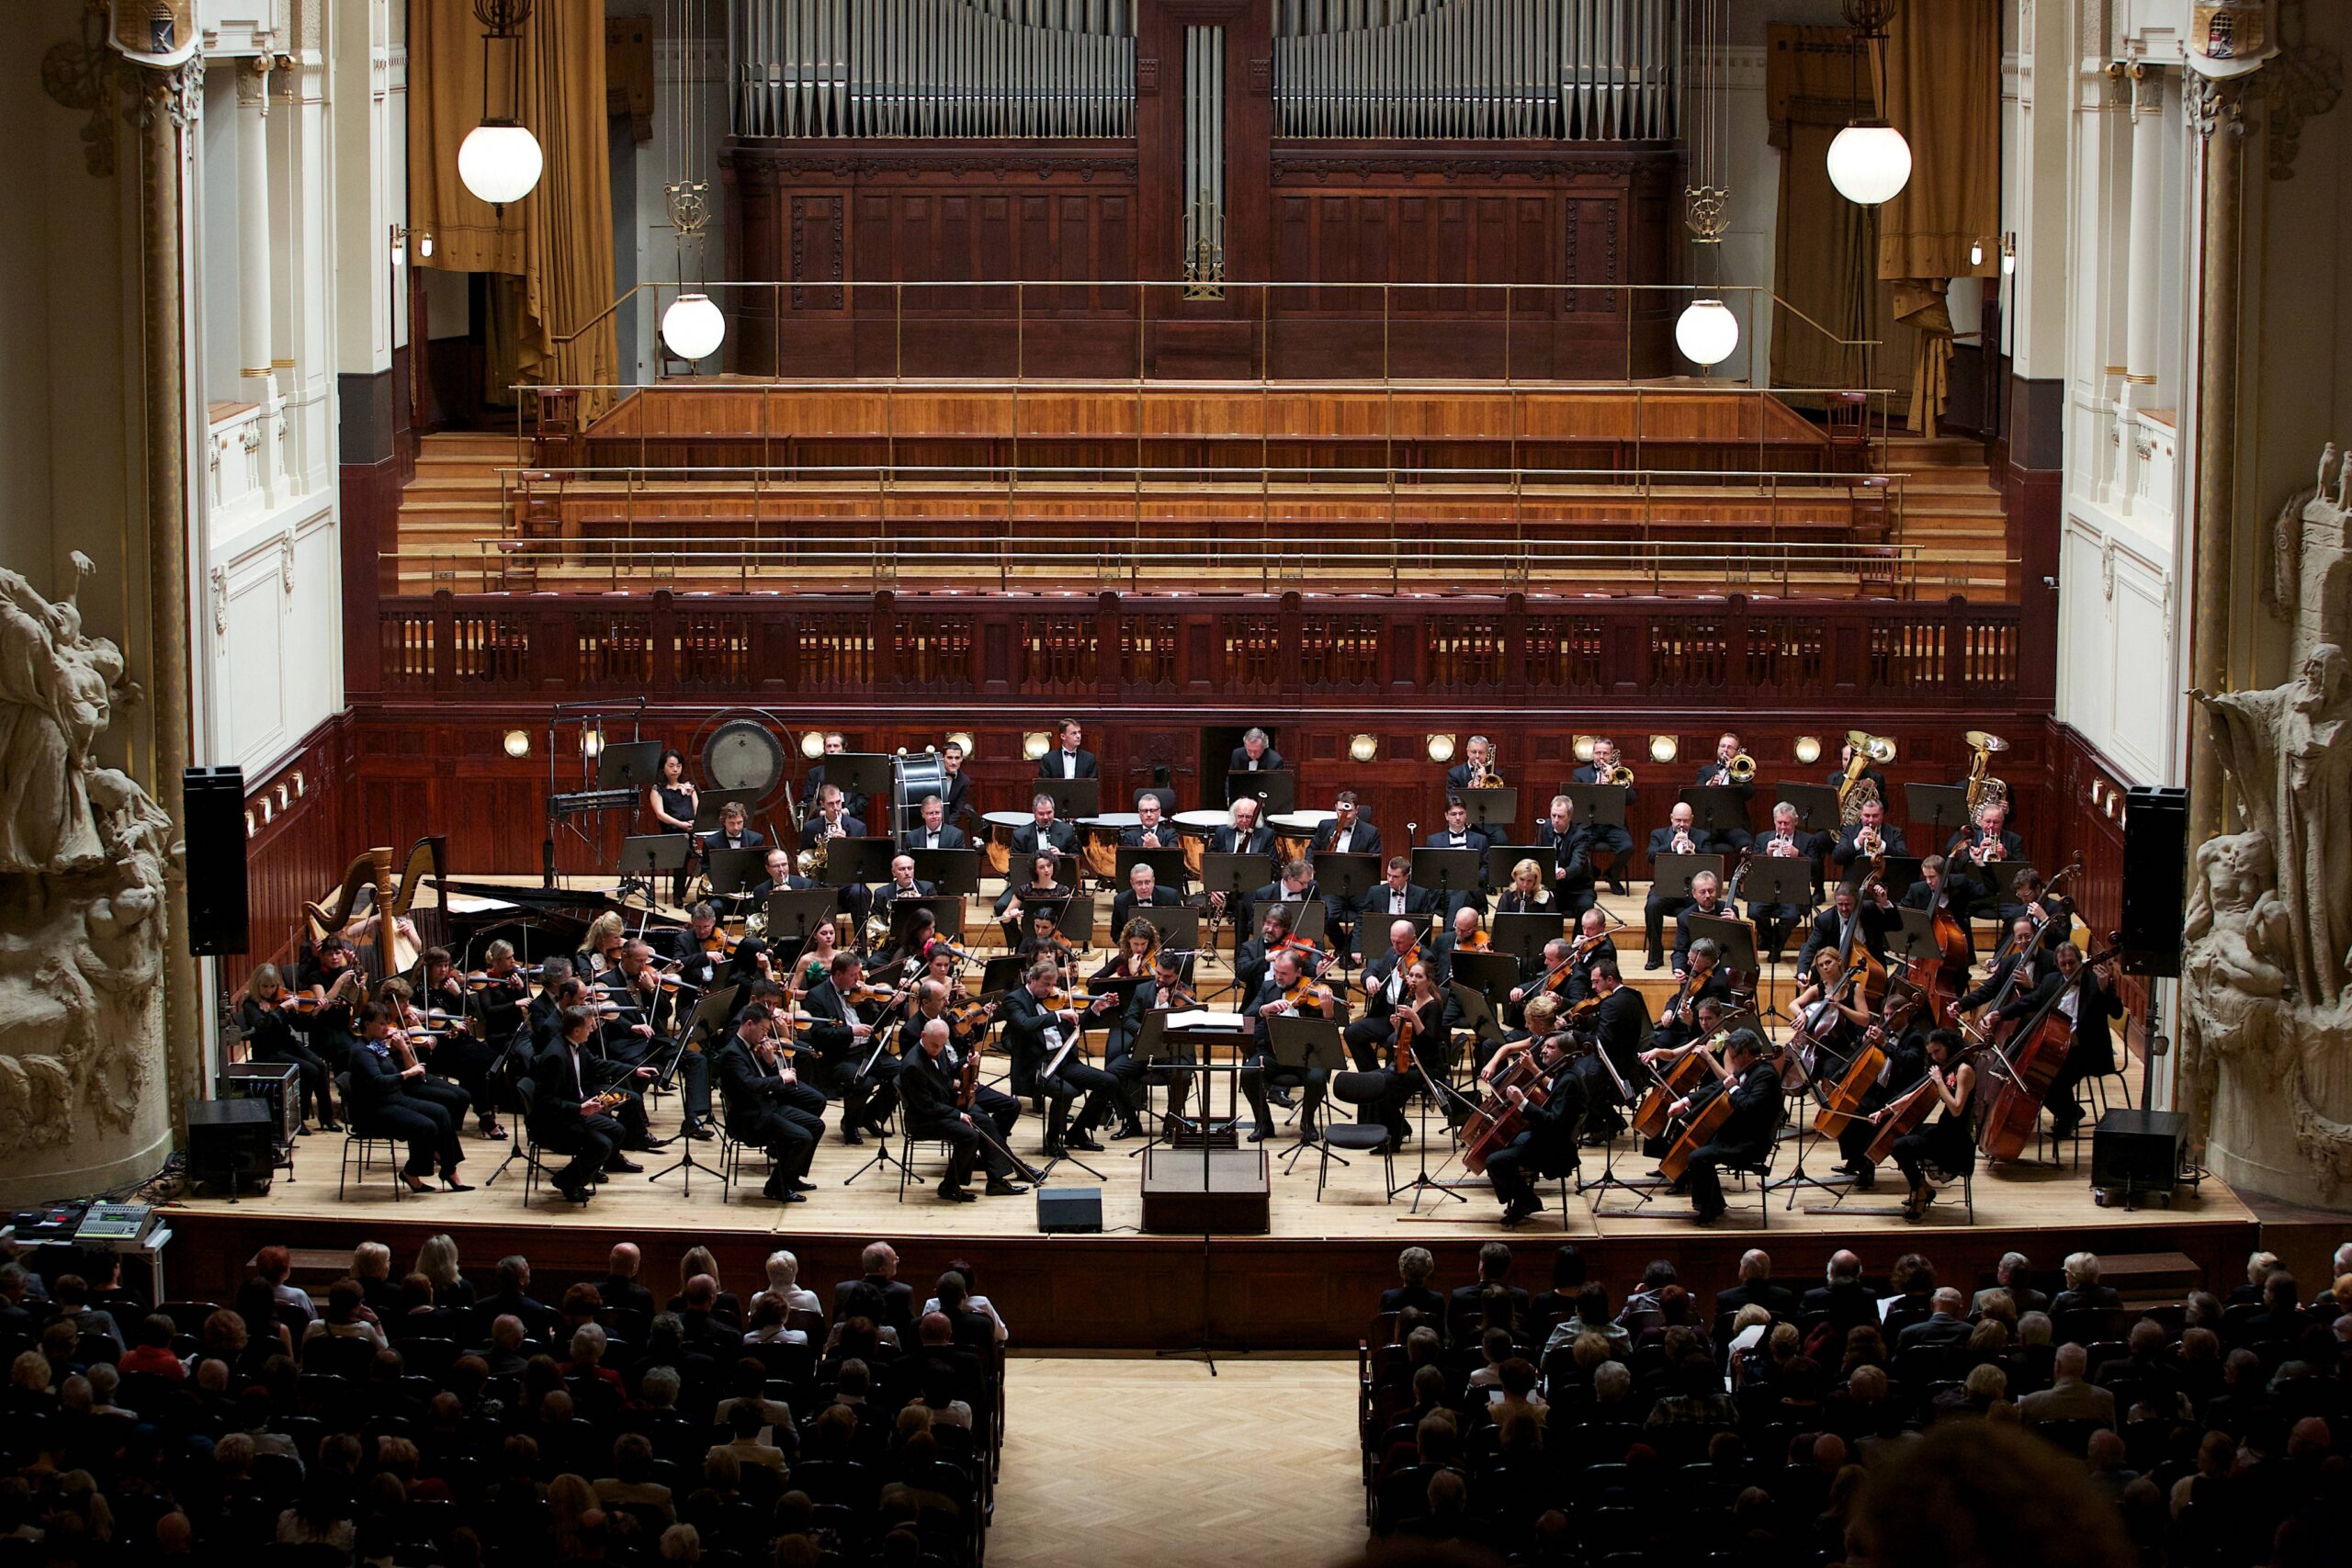 The Czech National Symphony Orchestra